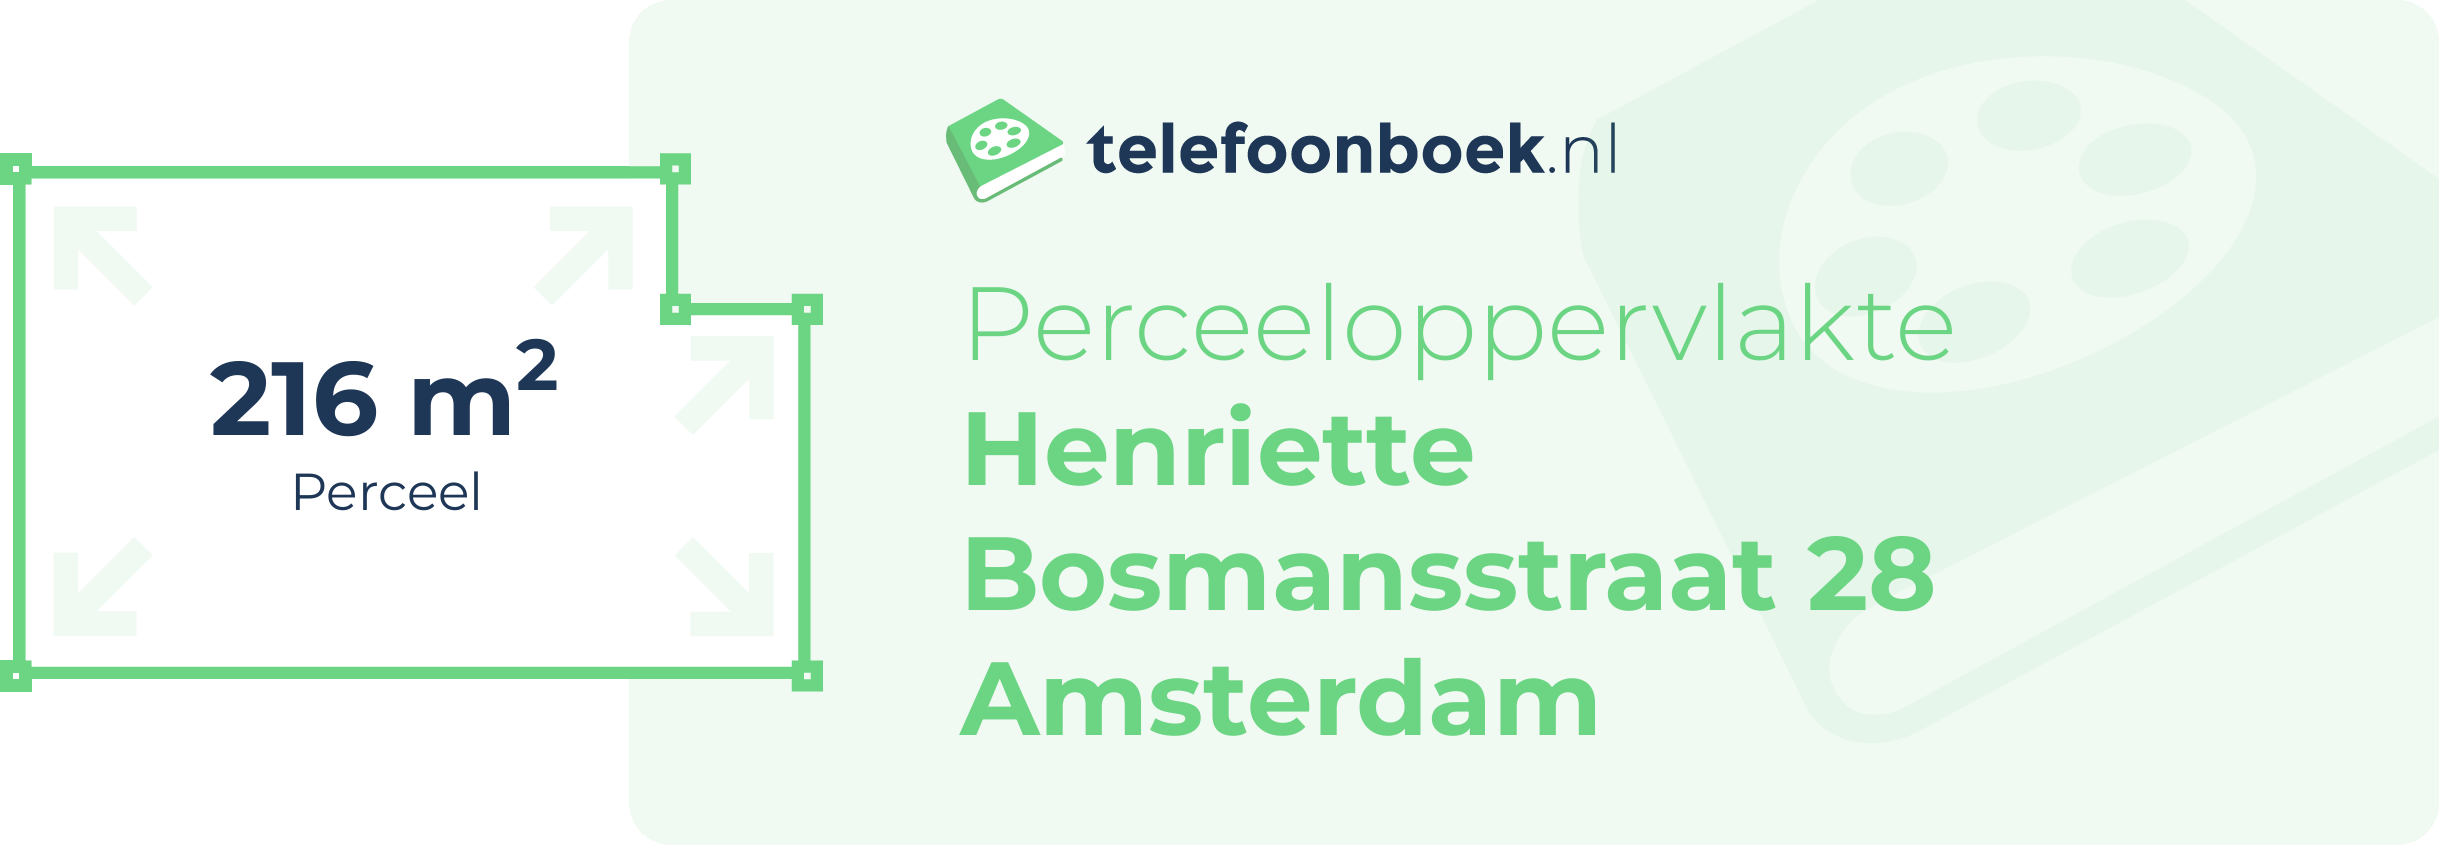 Perceeloppervlakte Henriette Bosmansstraat 28 Amsterdam